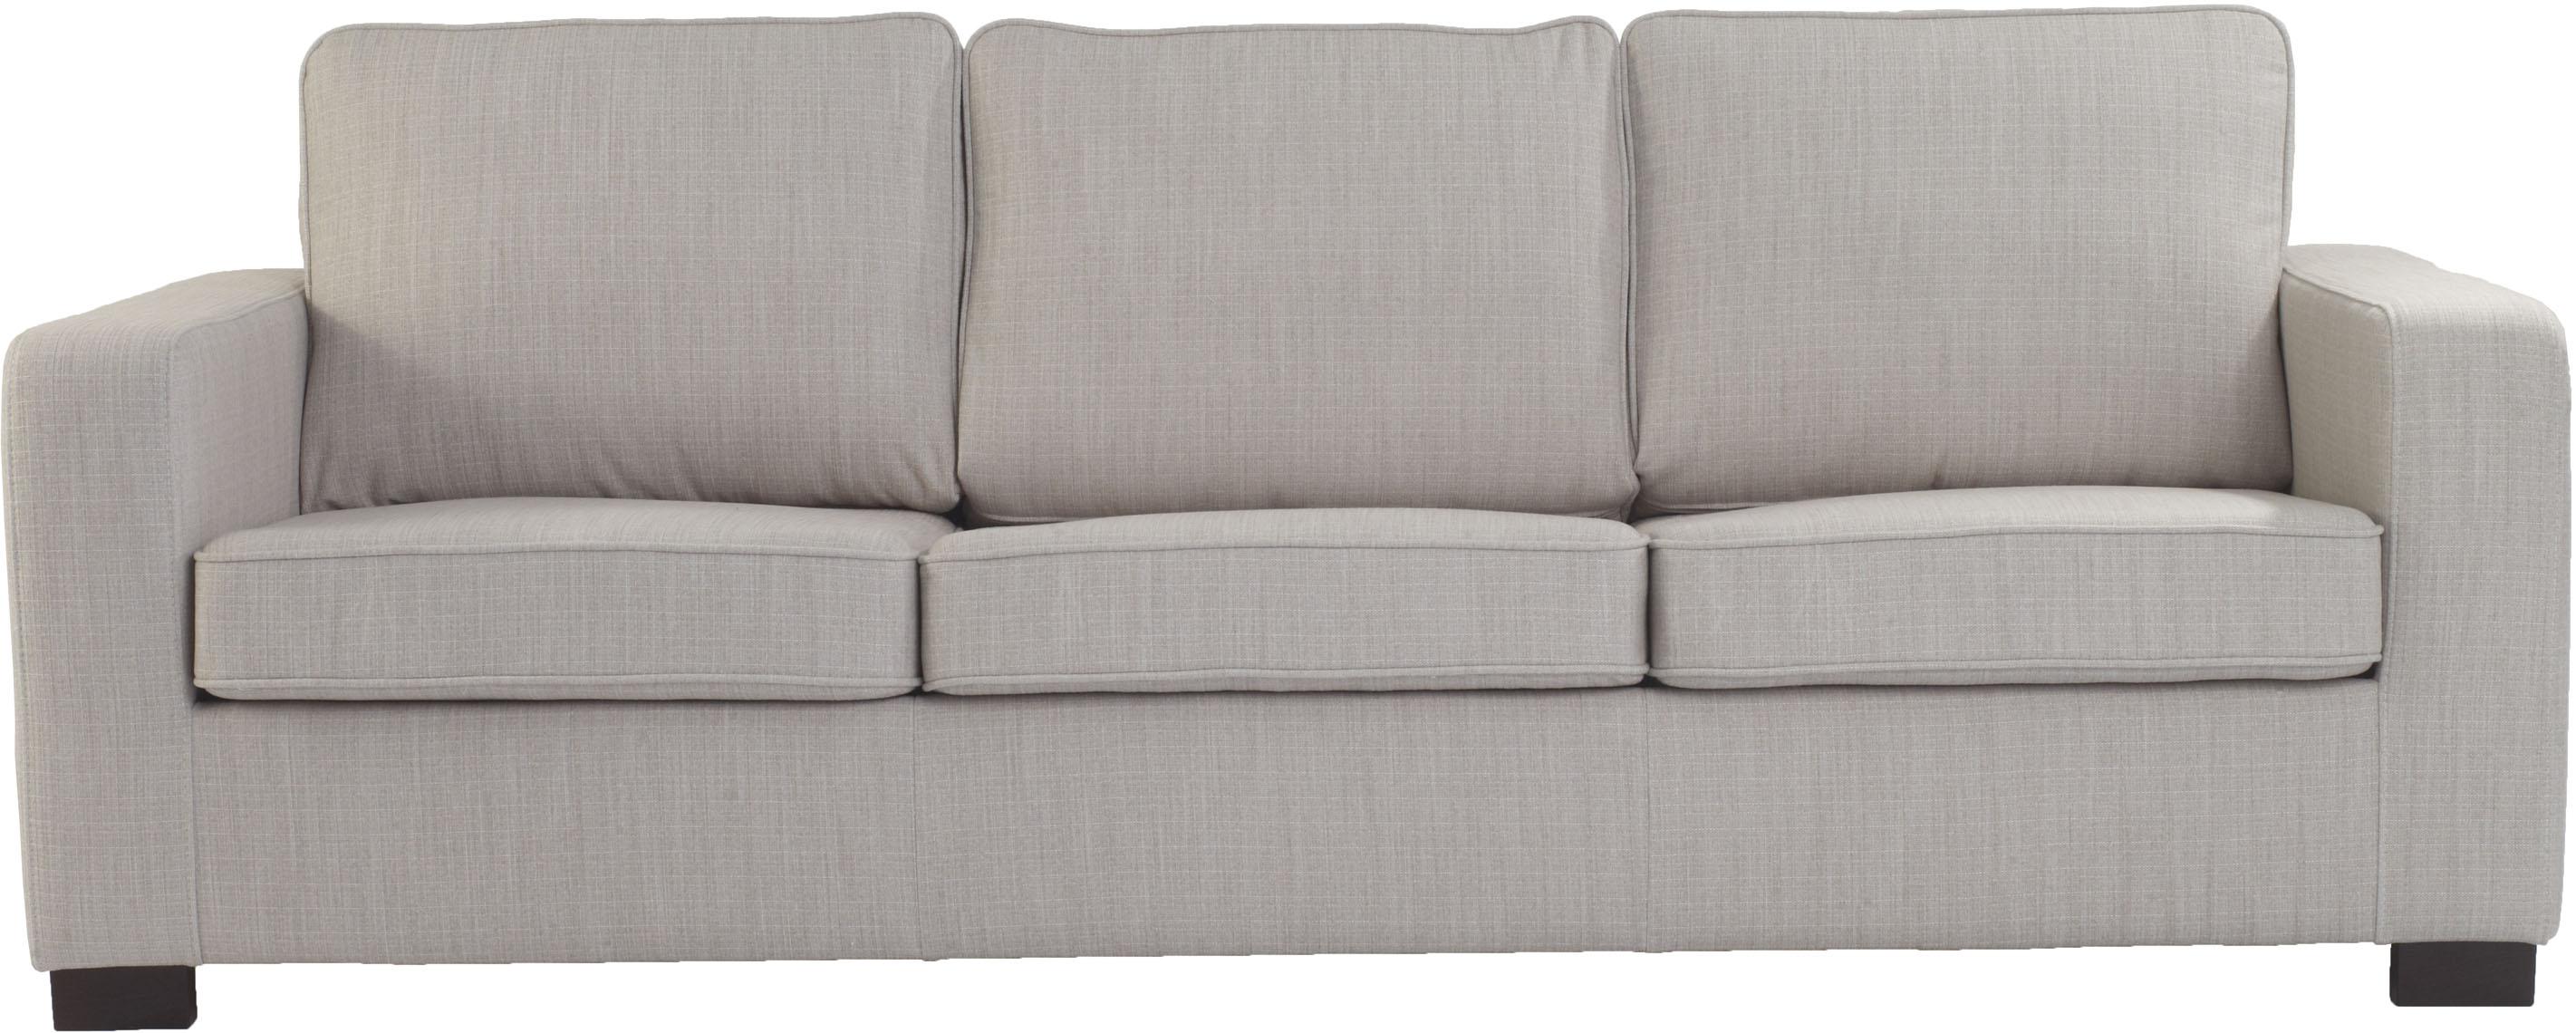 3-seat sofa Noel